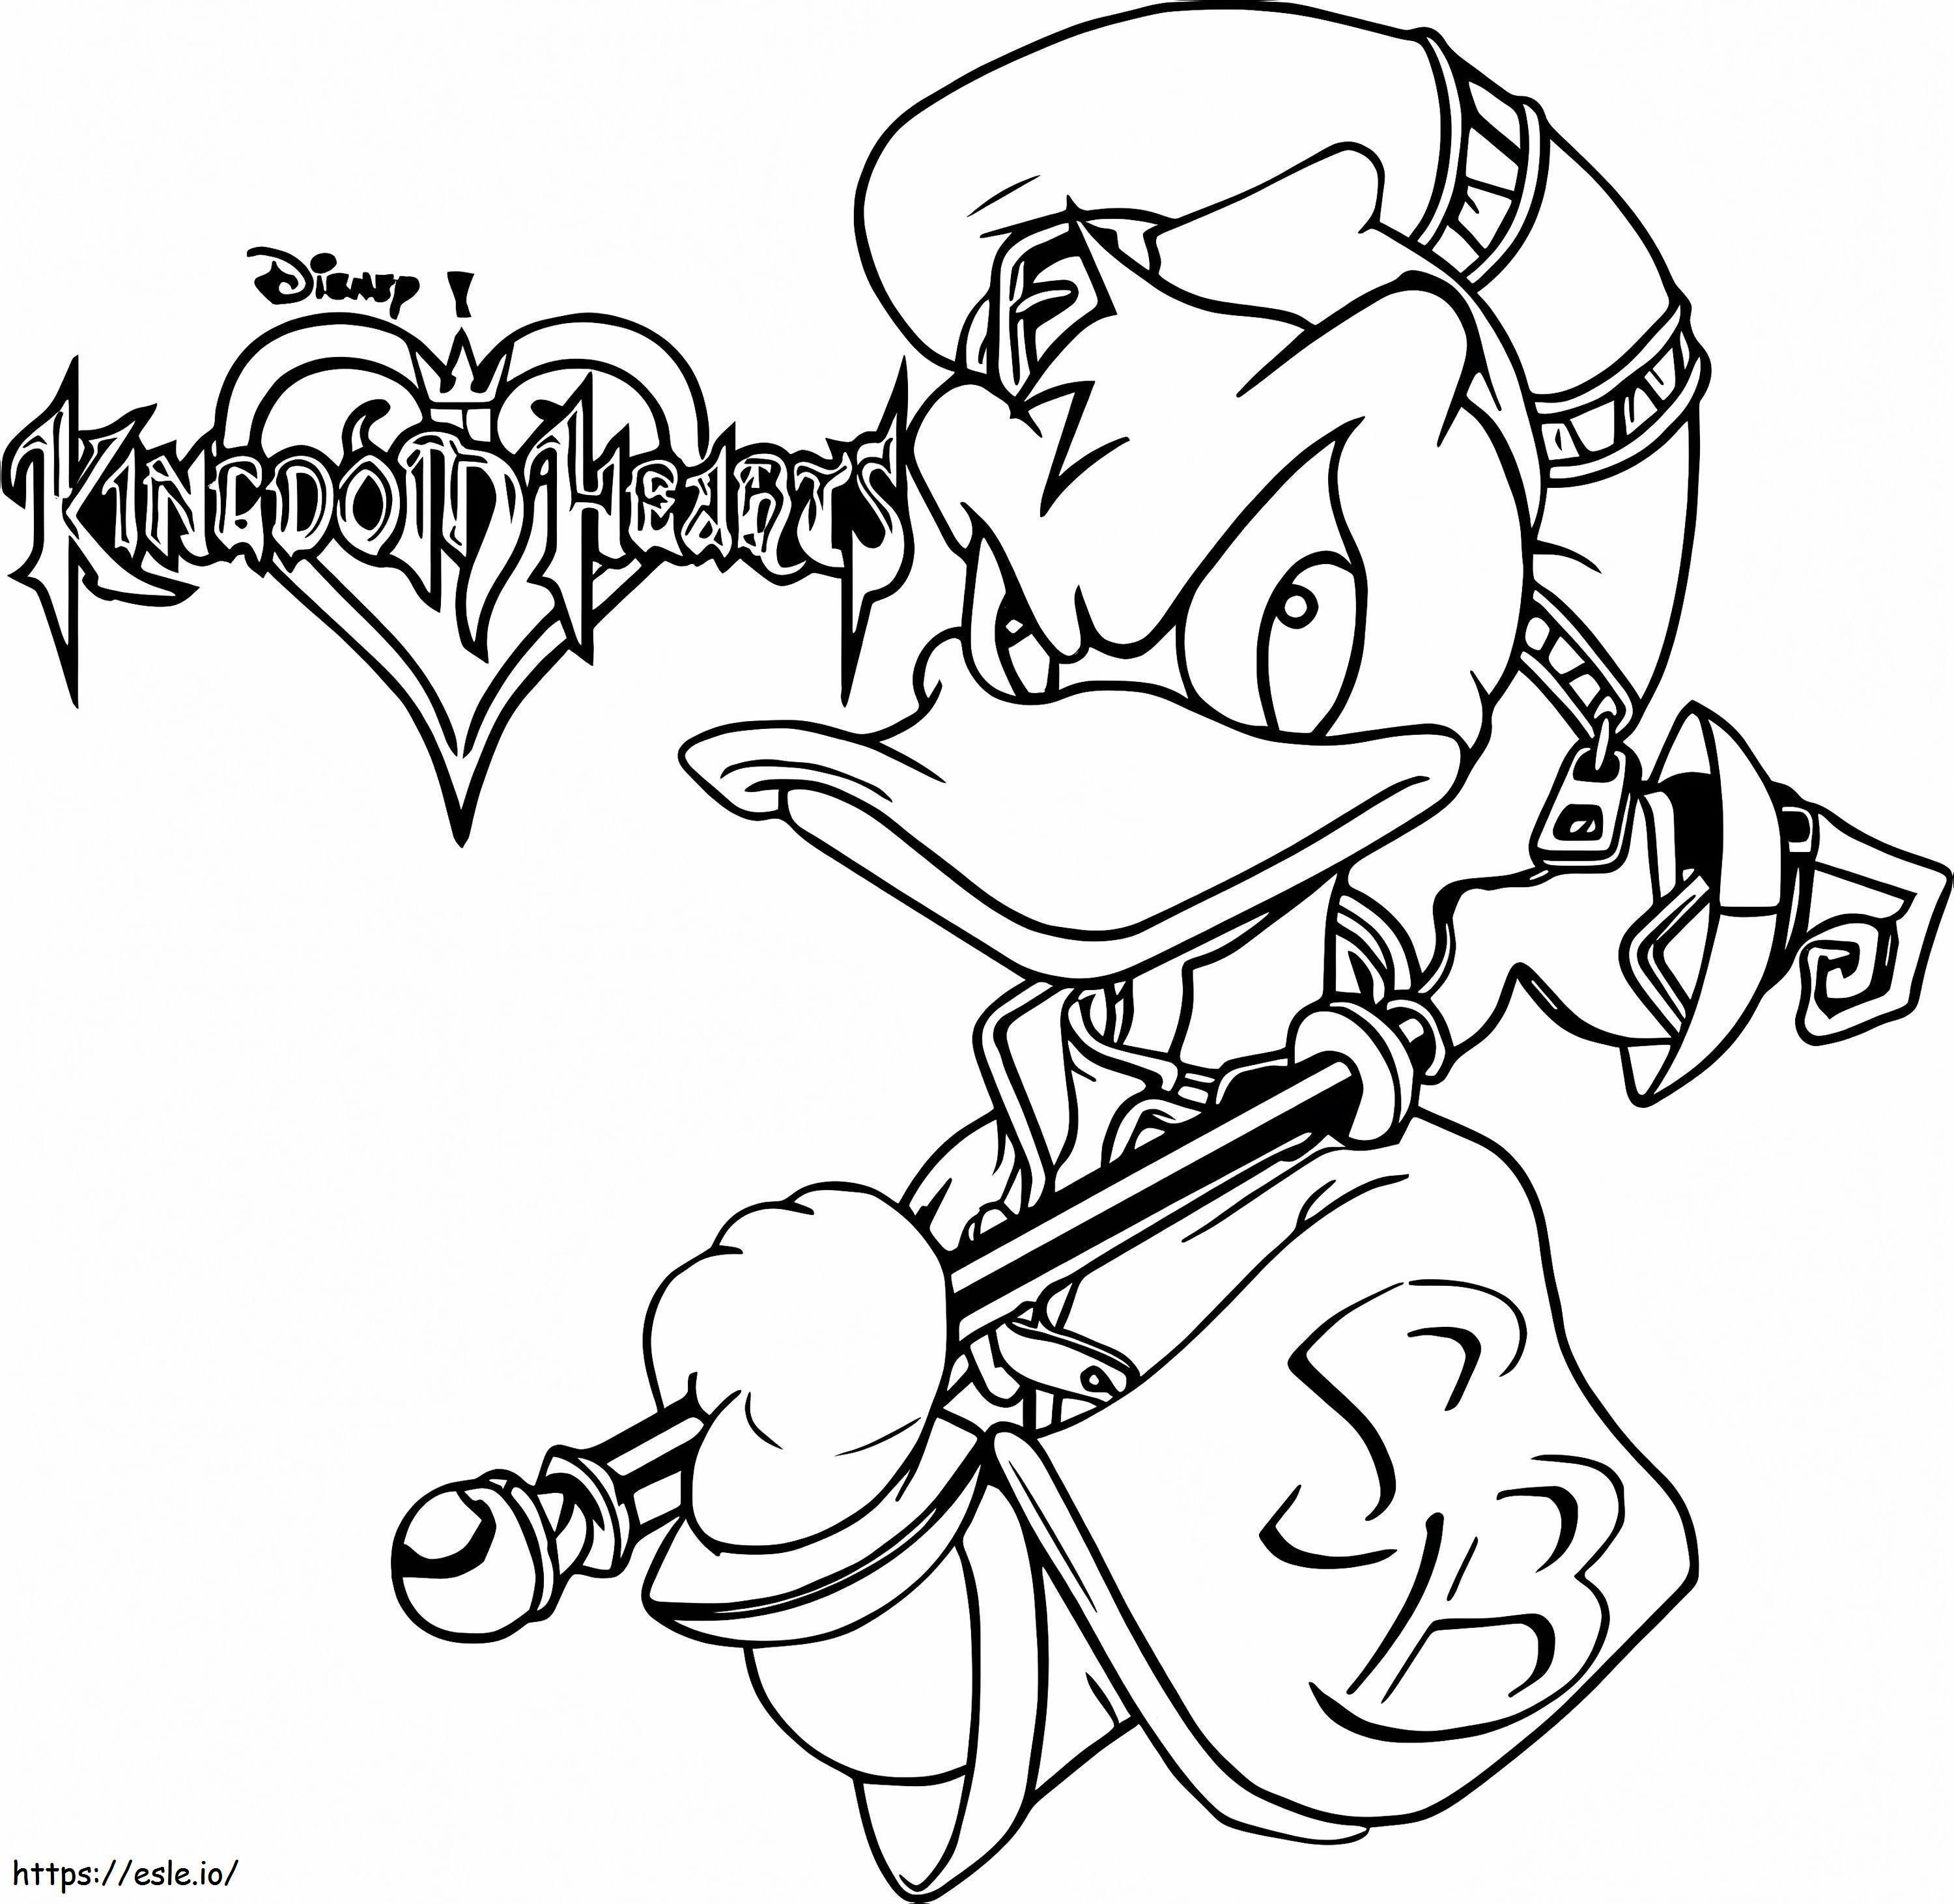 Kaczor Donlad z Kingdom Hearts kolorowanka